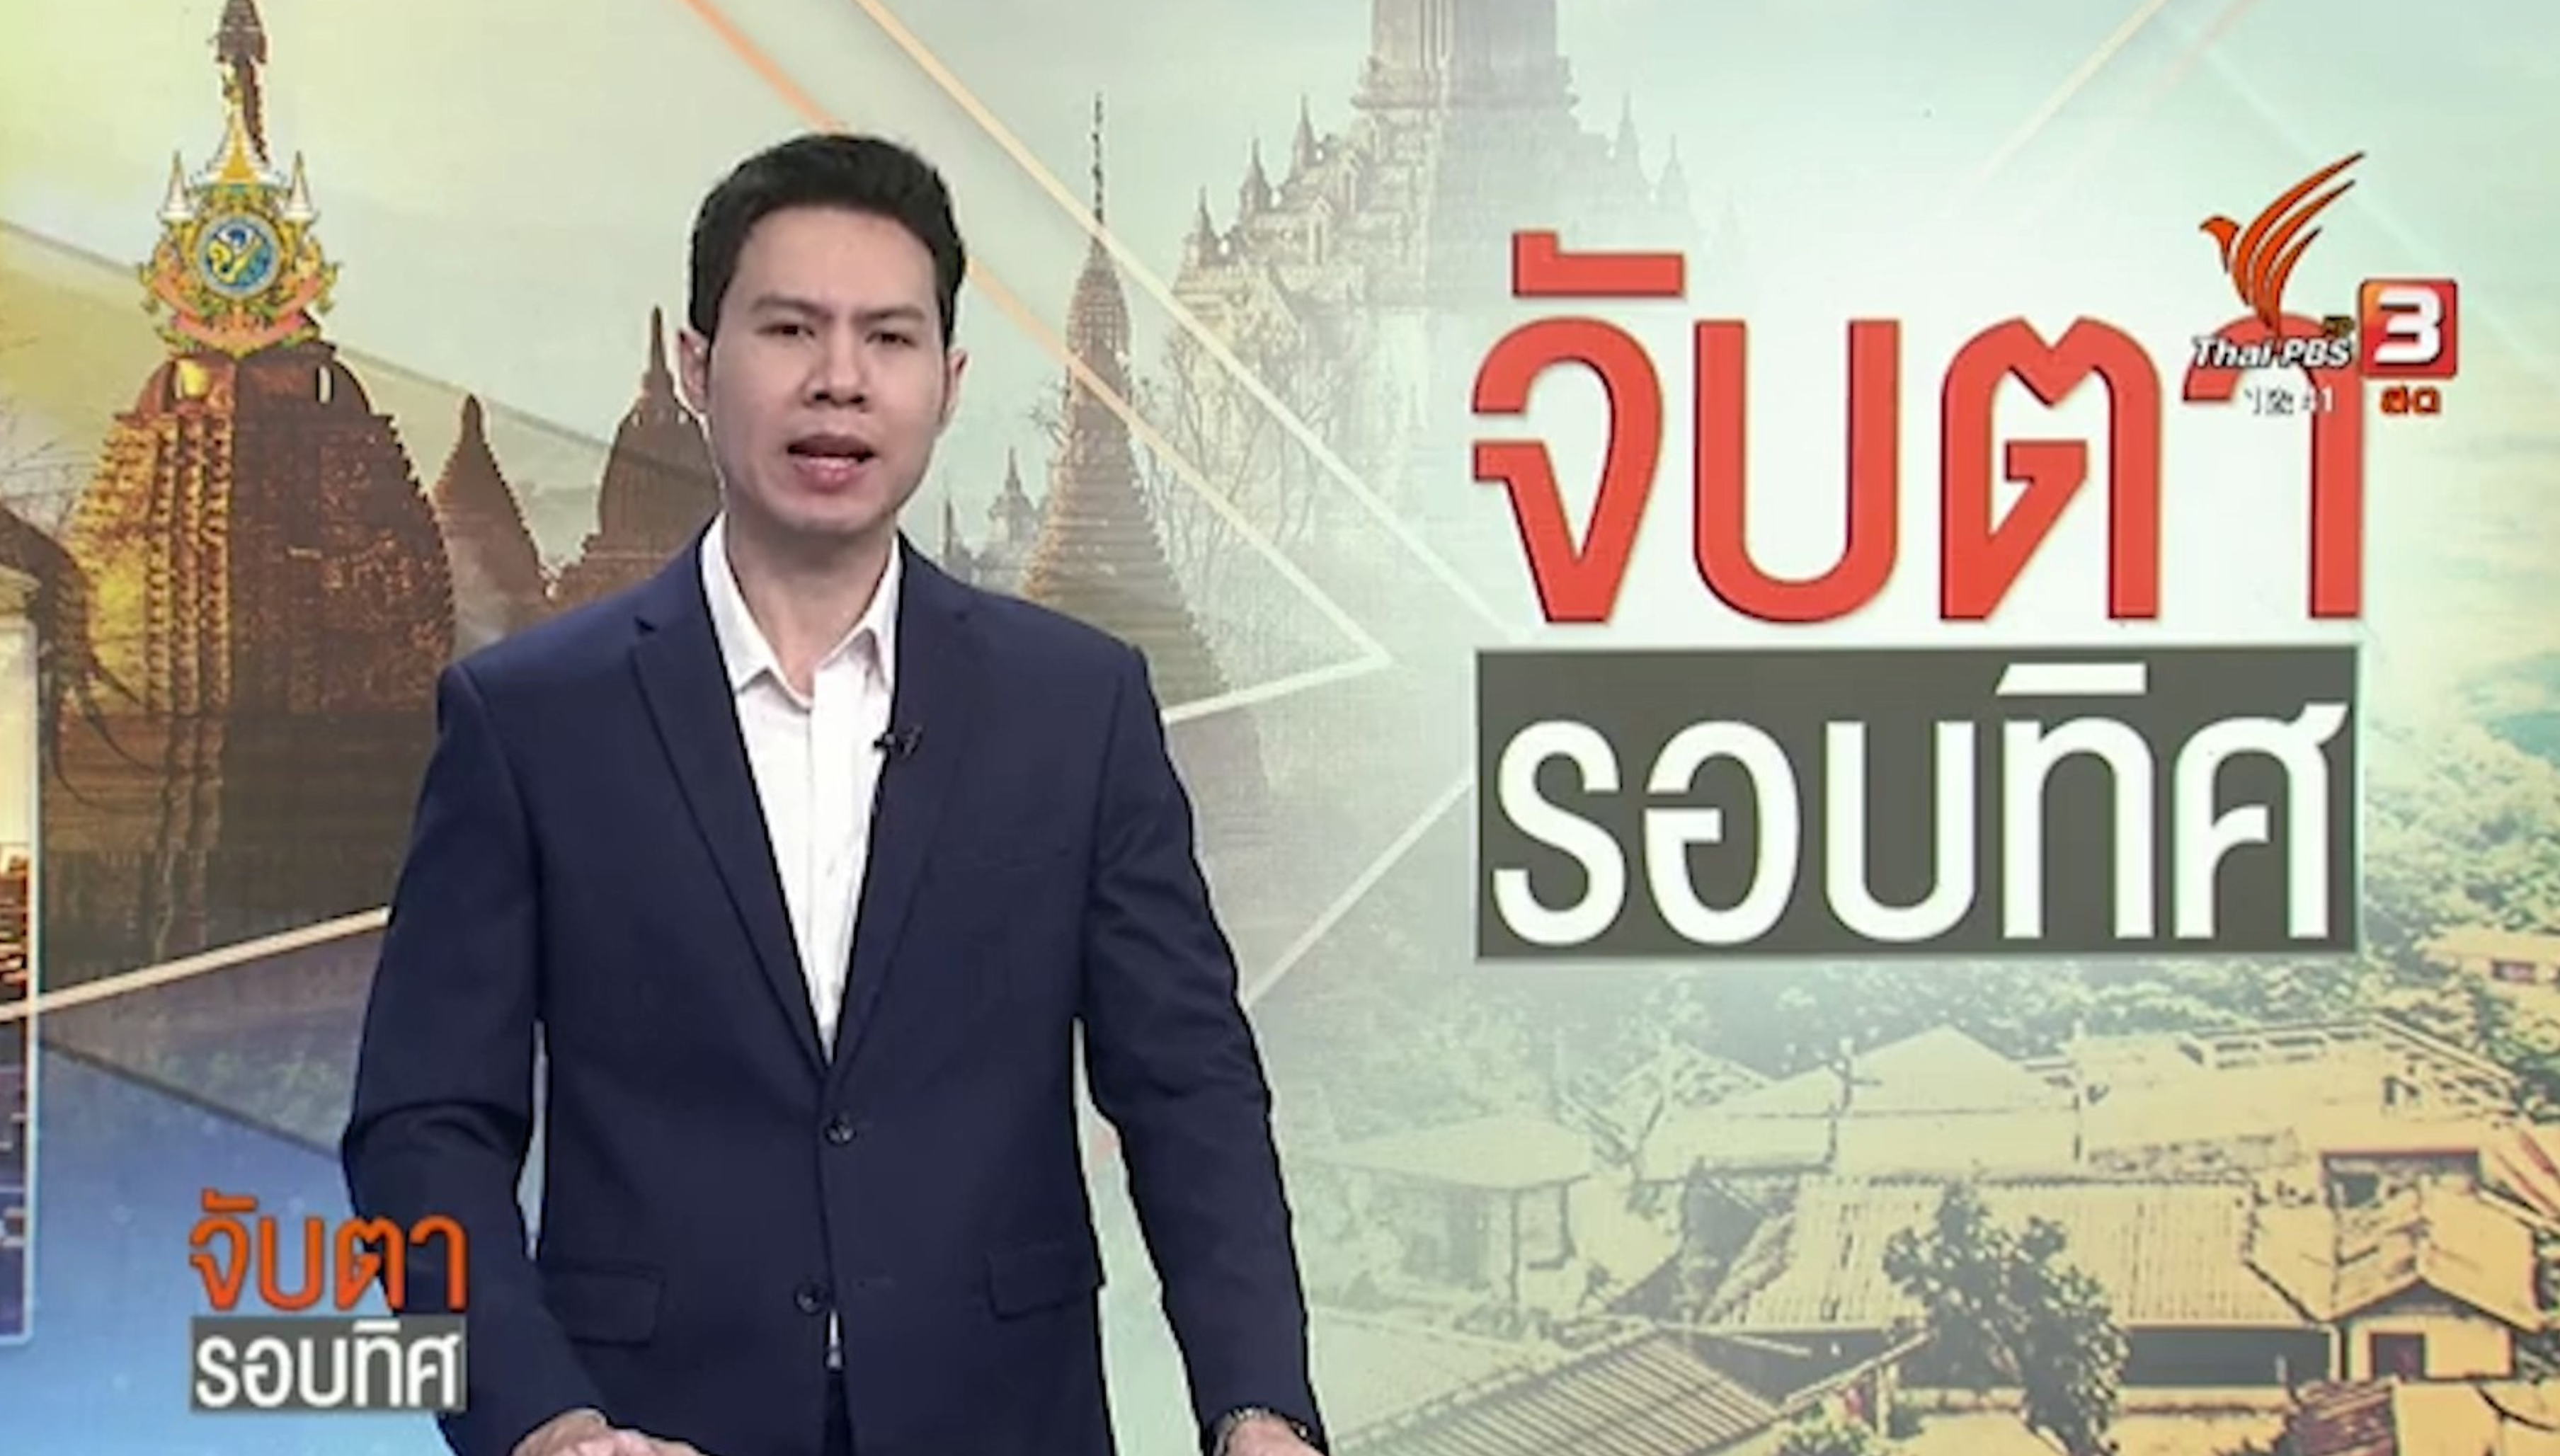 Thai PBS - ม.นครพนม เปิดเส้นทางท่องเที่ยวใหม่พื้นที่หลุบอีเลิด อ.นาแก จ.นครพนม